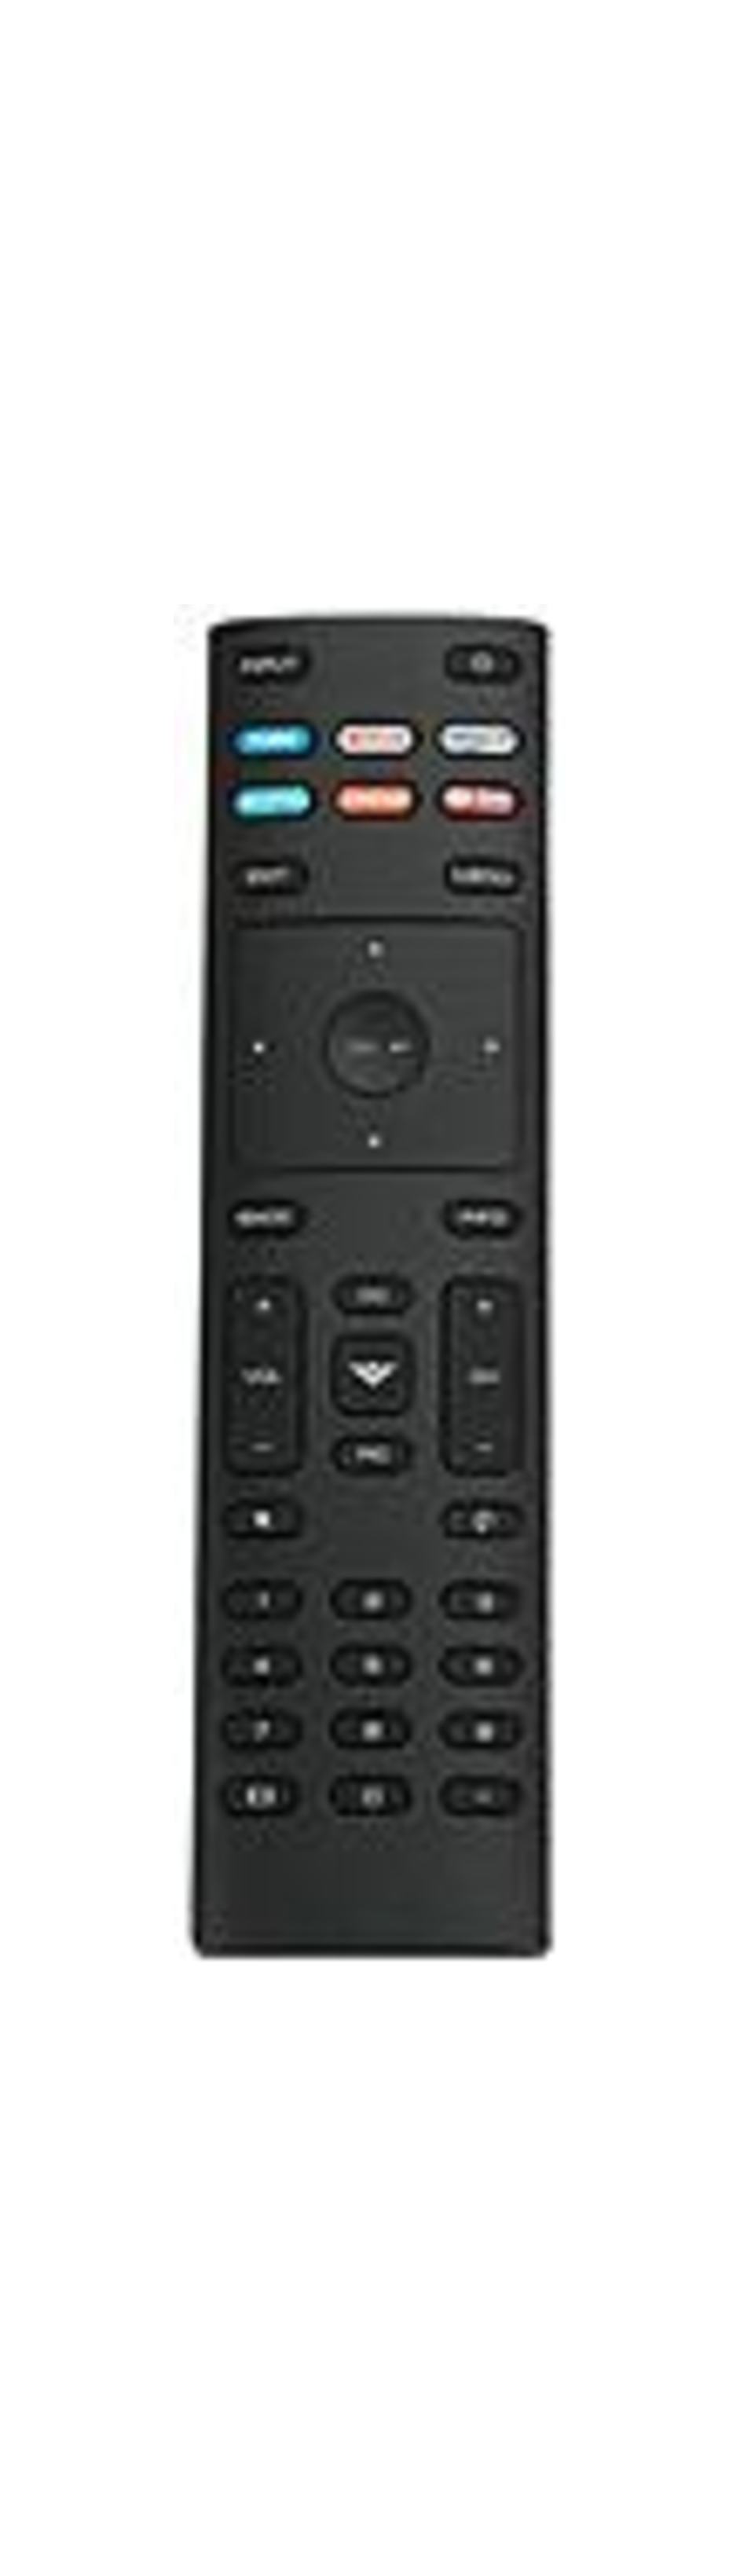 Vizio XRT136 Remote Control for P55-F1, P65-F1, P75-F1, D24f-F1, D43f-F1, D50f-F1, E65-E1 Smart TV - 2 x AAA Battery Required